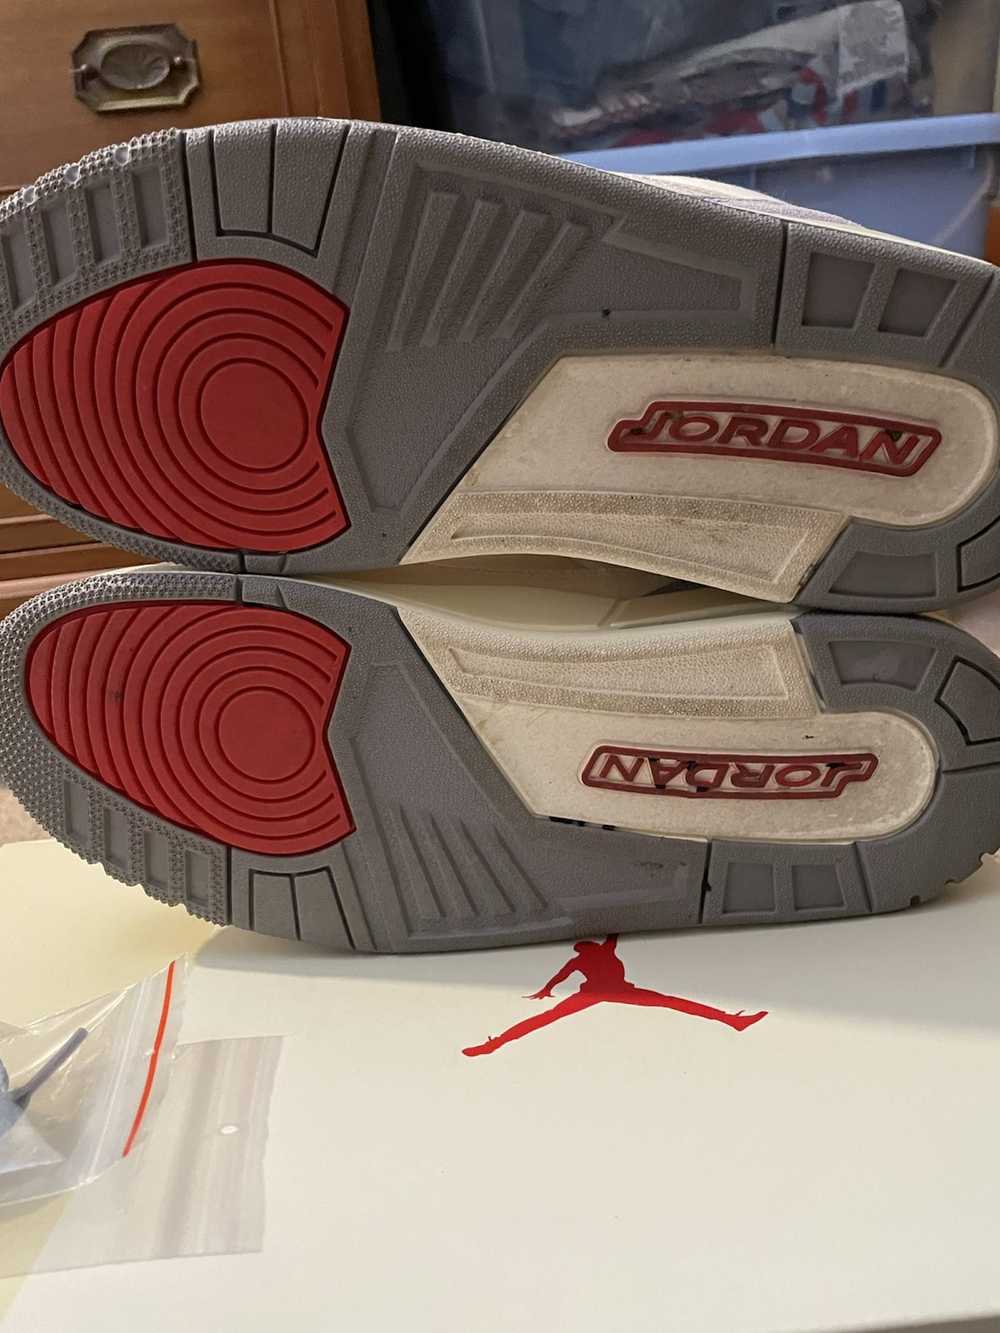 Jordan Brand × Nike Air Jordan Retro 3 'Muslin' - image 4